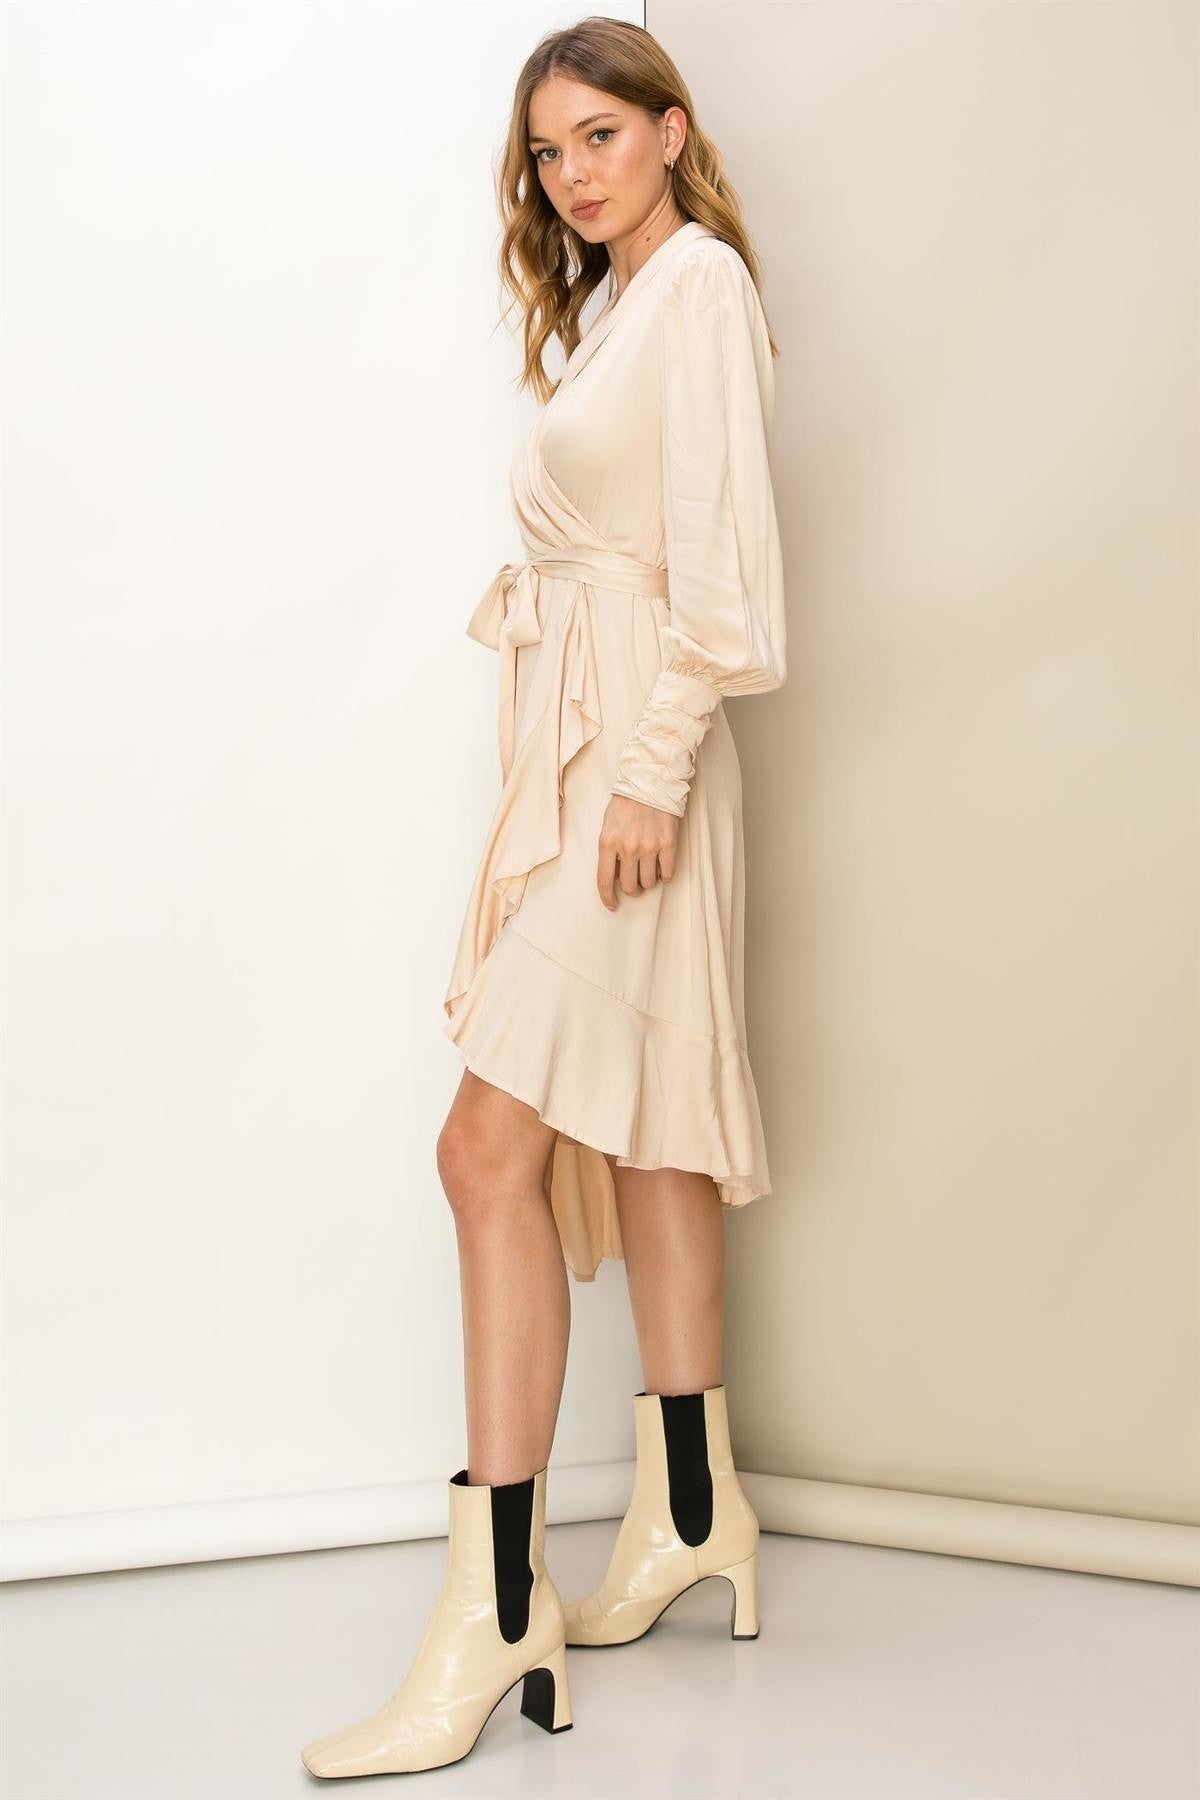 Cream Wrap Long Sleeve Mid Length Dress